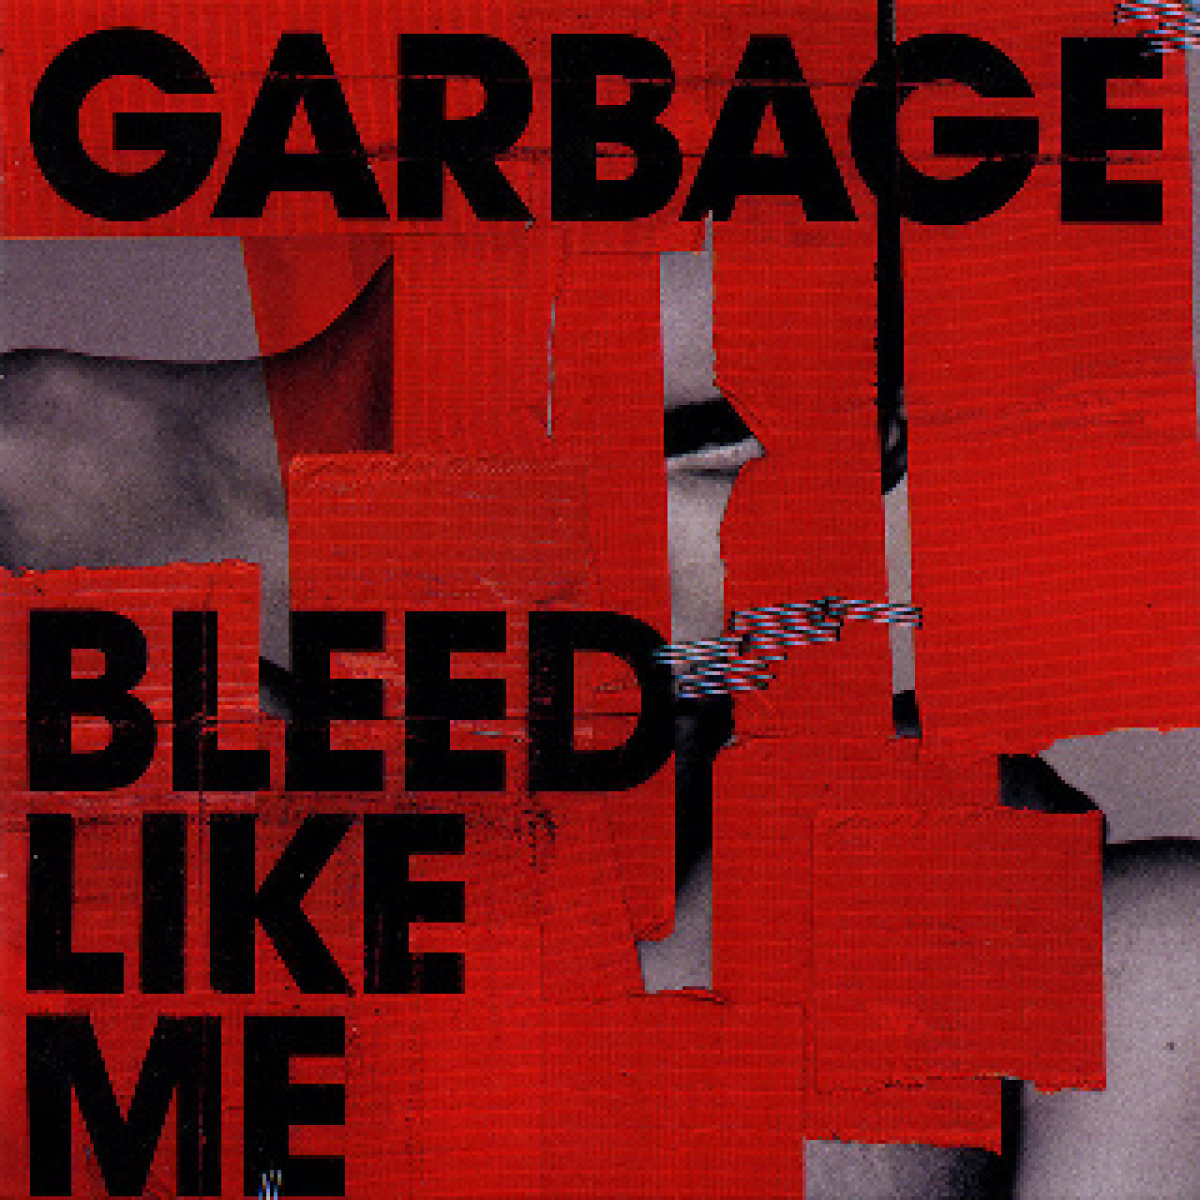 Garbage, Bleed Like Me